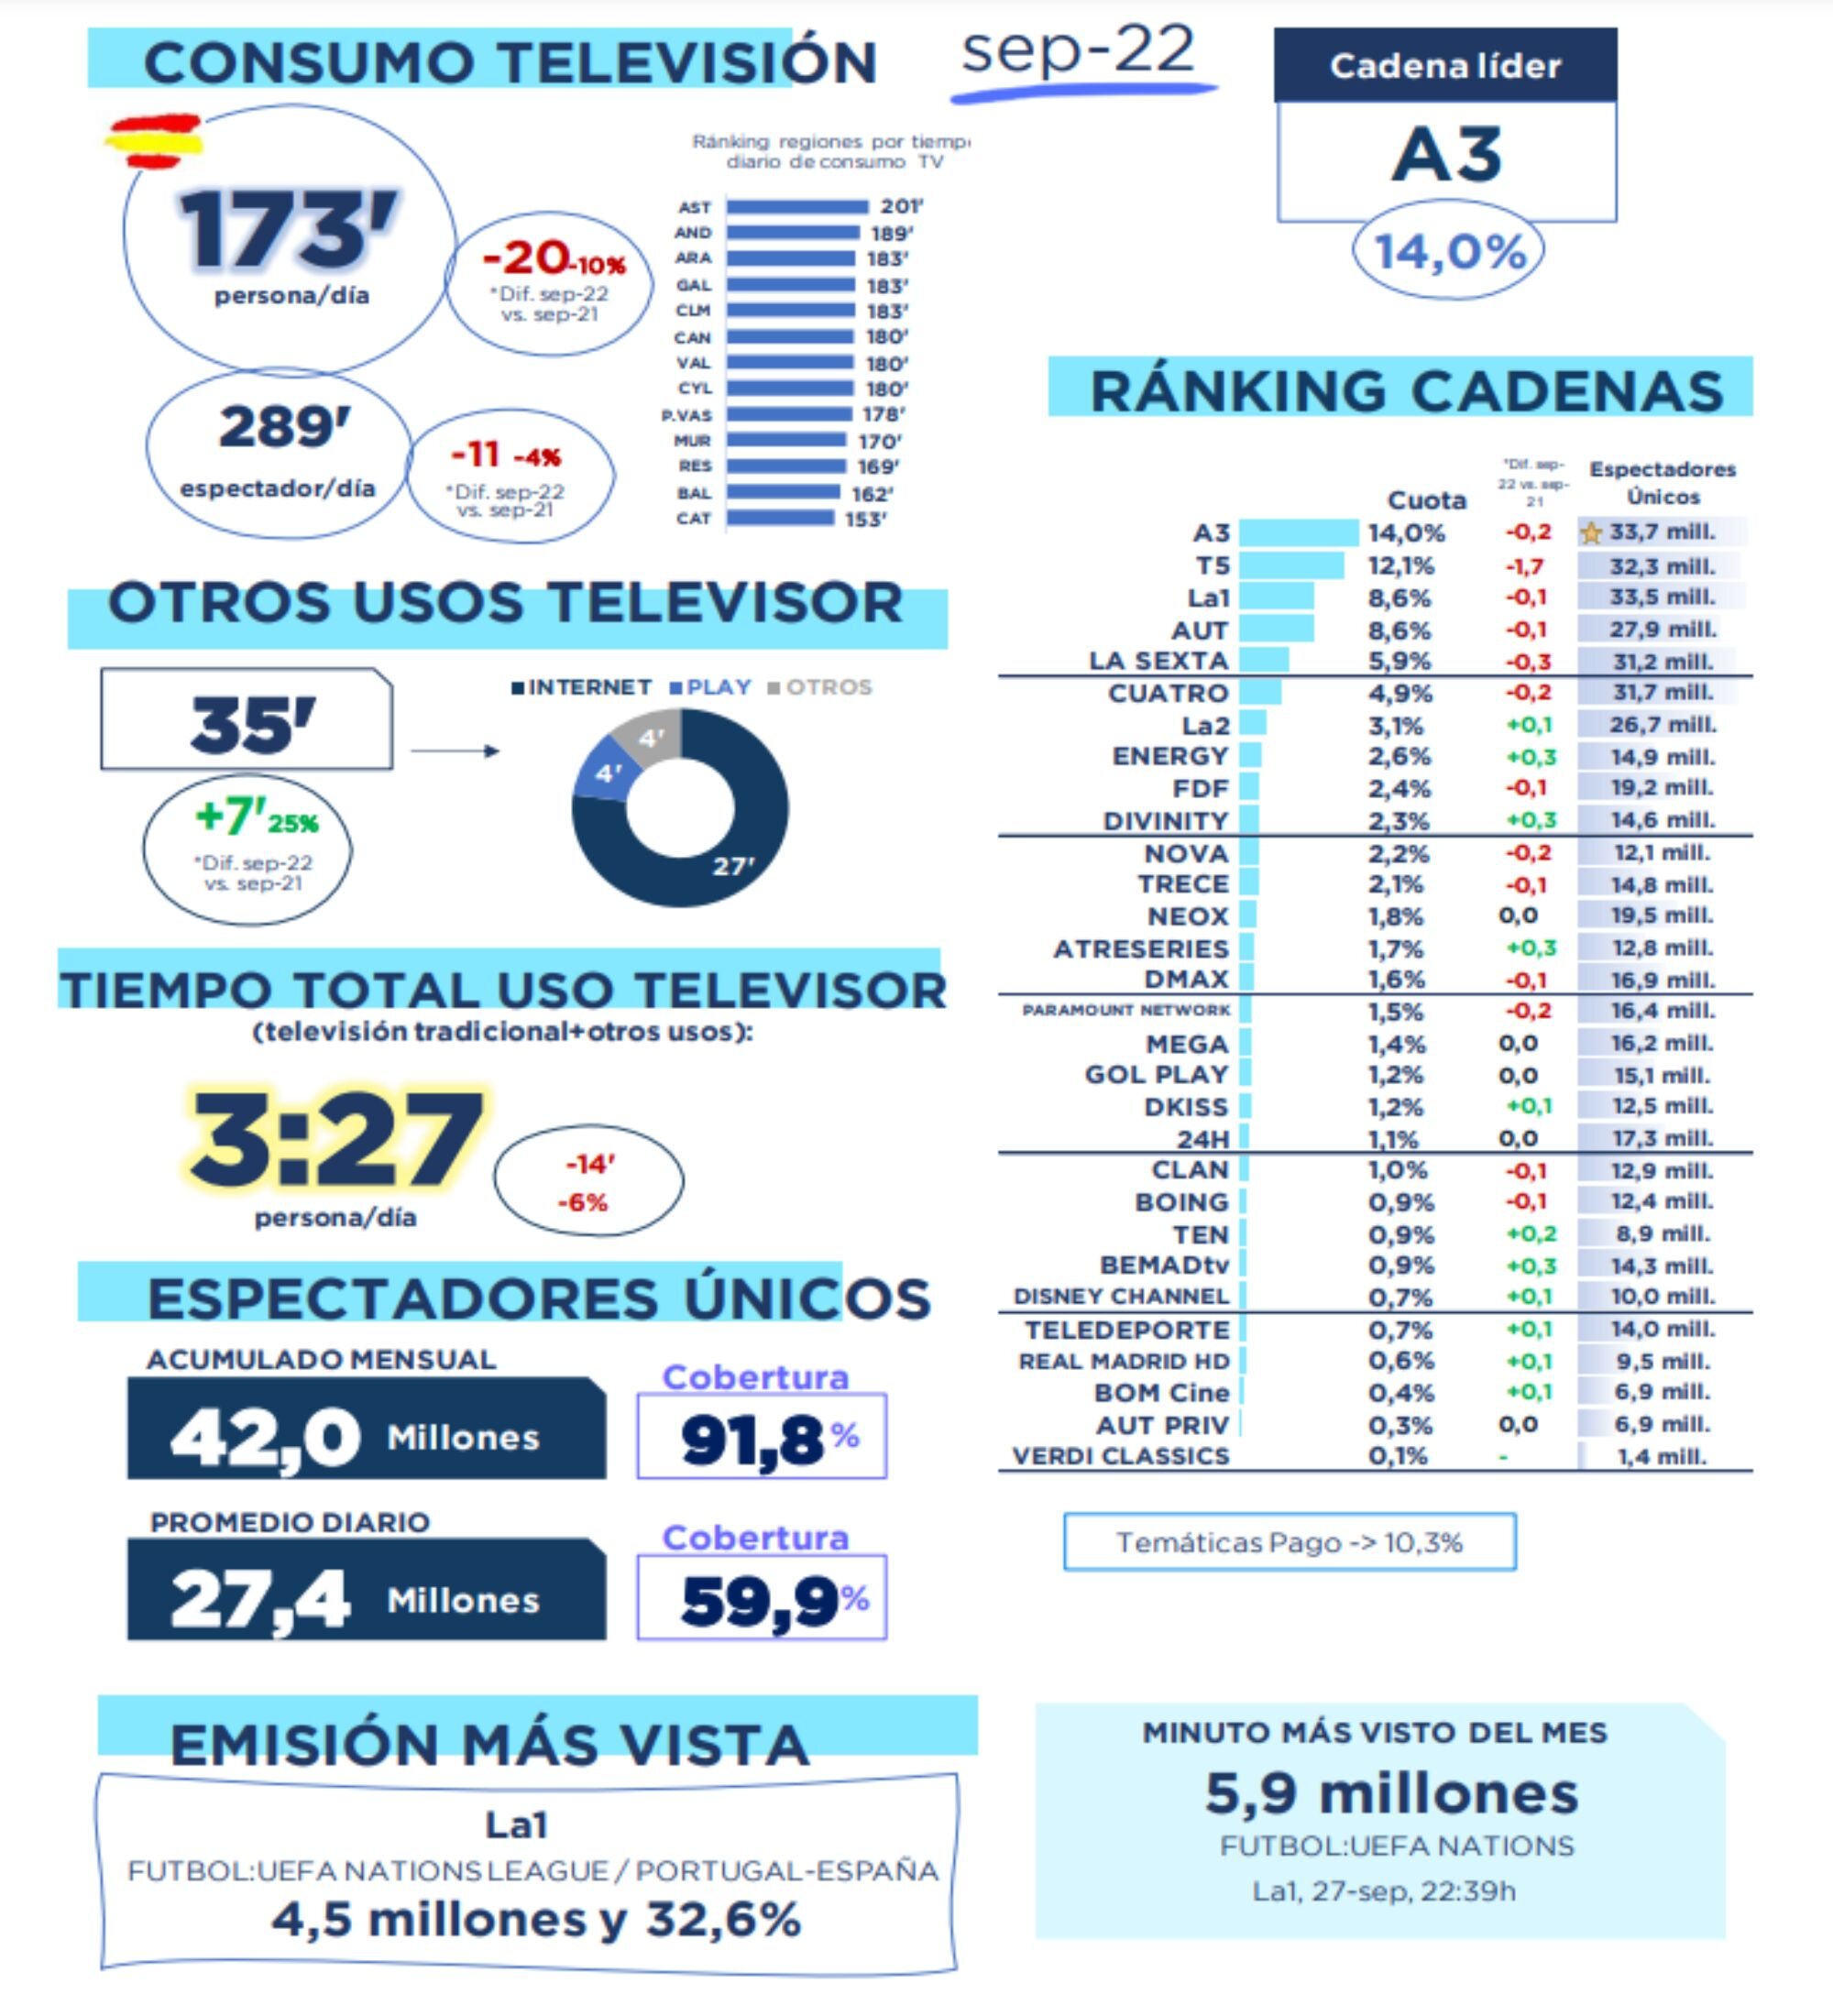 Visión global del mercado televisivo en septiembre 2022